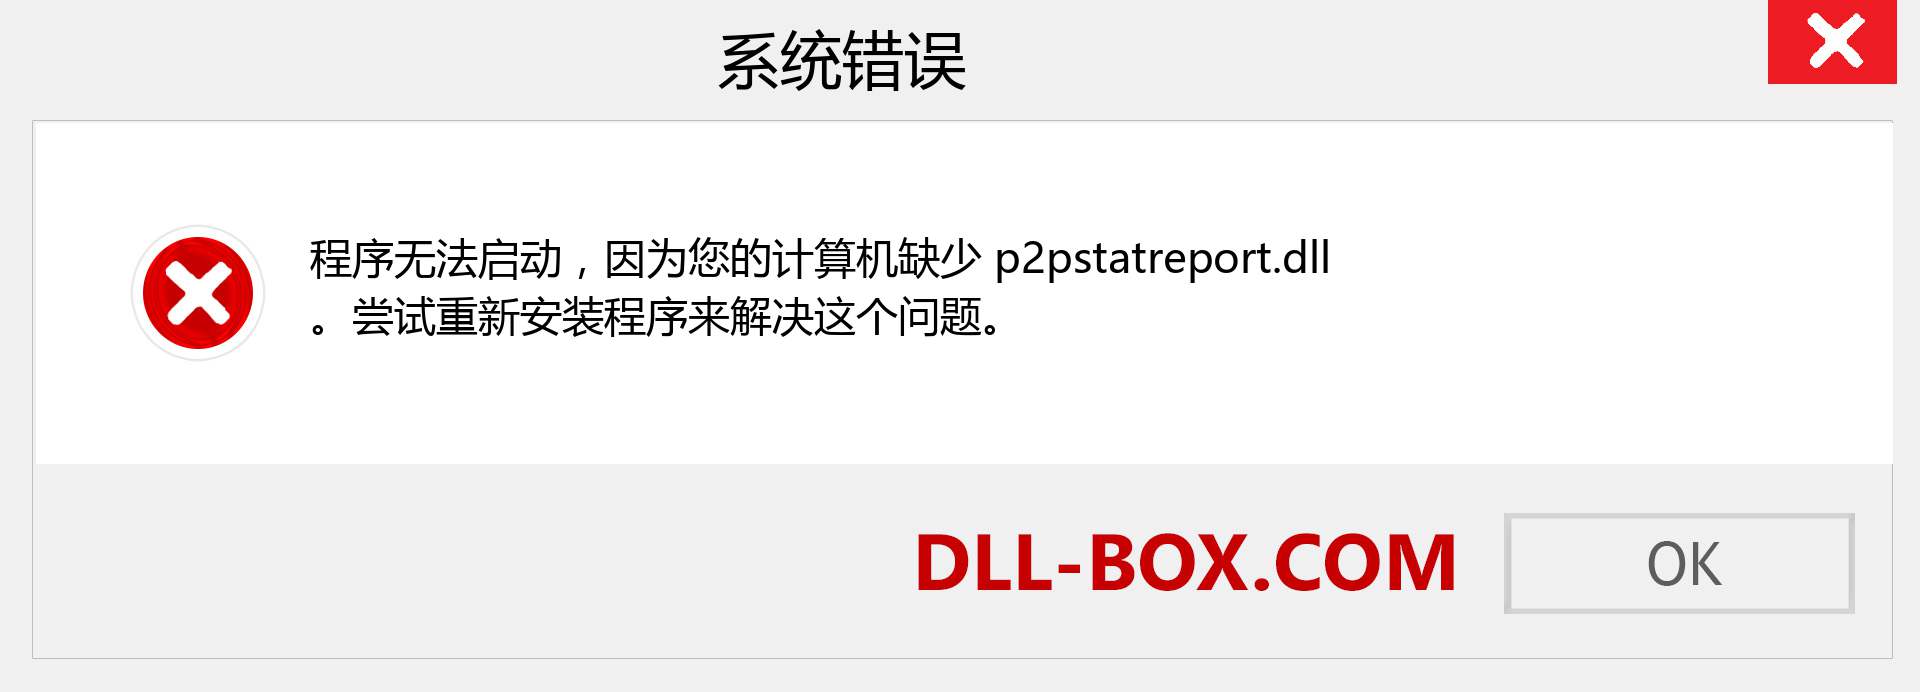 p2pstatreport.dll 文件丢失？。 适用于 Windows 7、8、10 的下载 - 修复 Windows、照片、图像上的 p2pstatreport dll 丢失错误